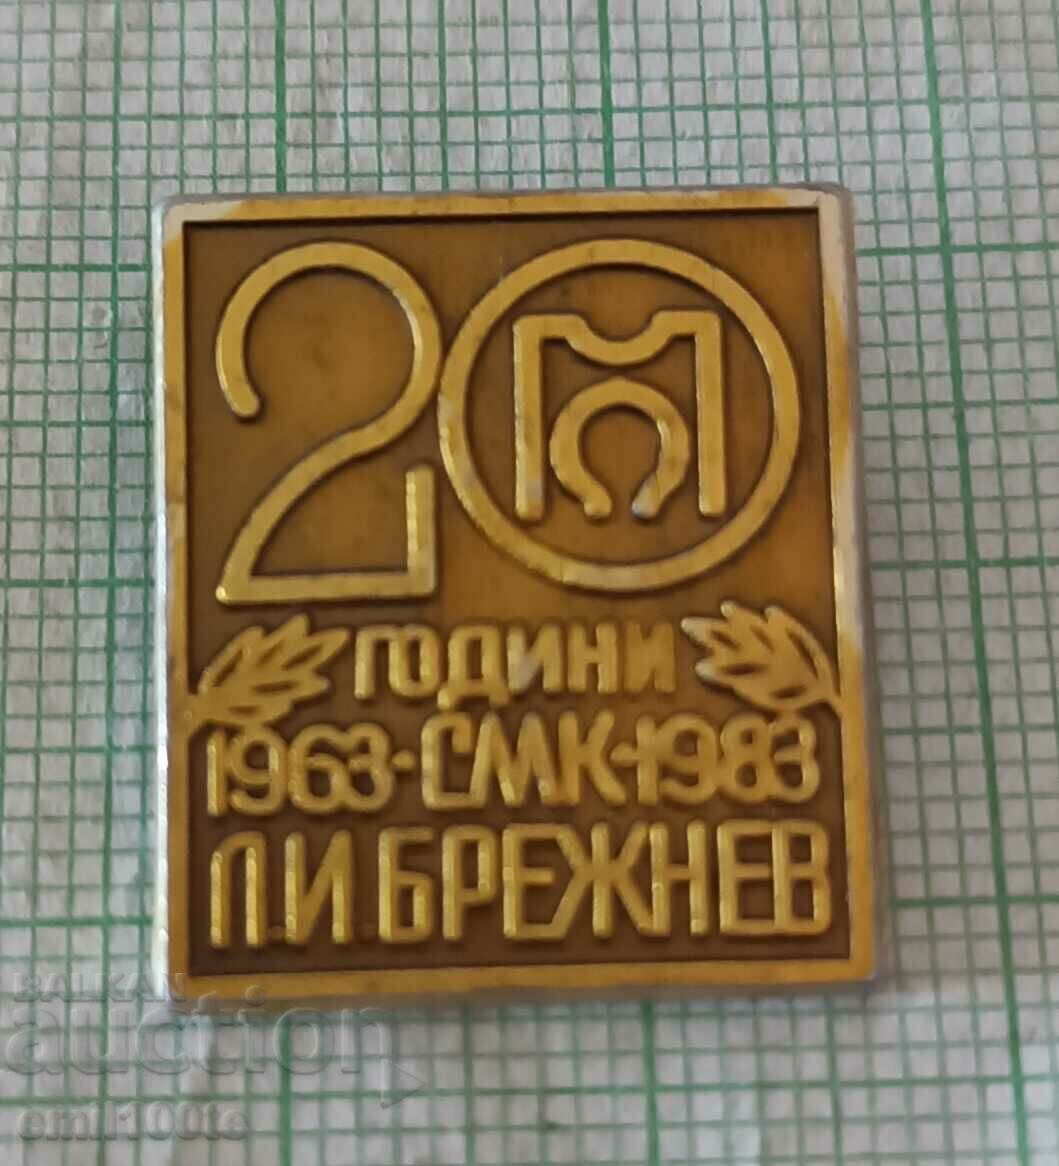 Badge - 20 years SMK L.I. Brezhnev 1963 1983